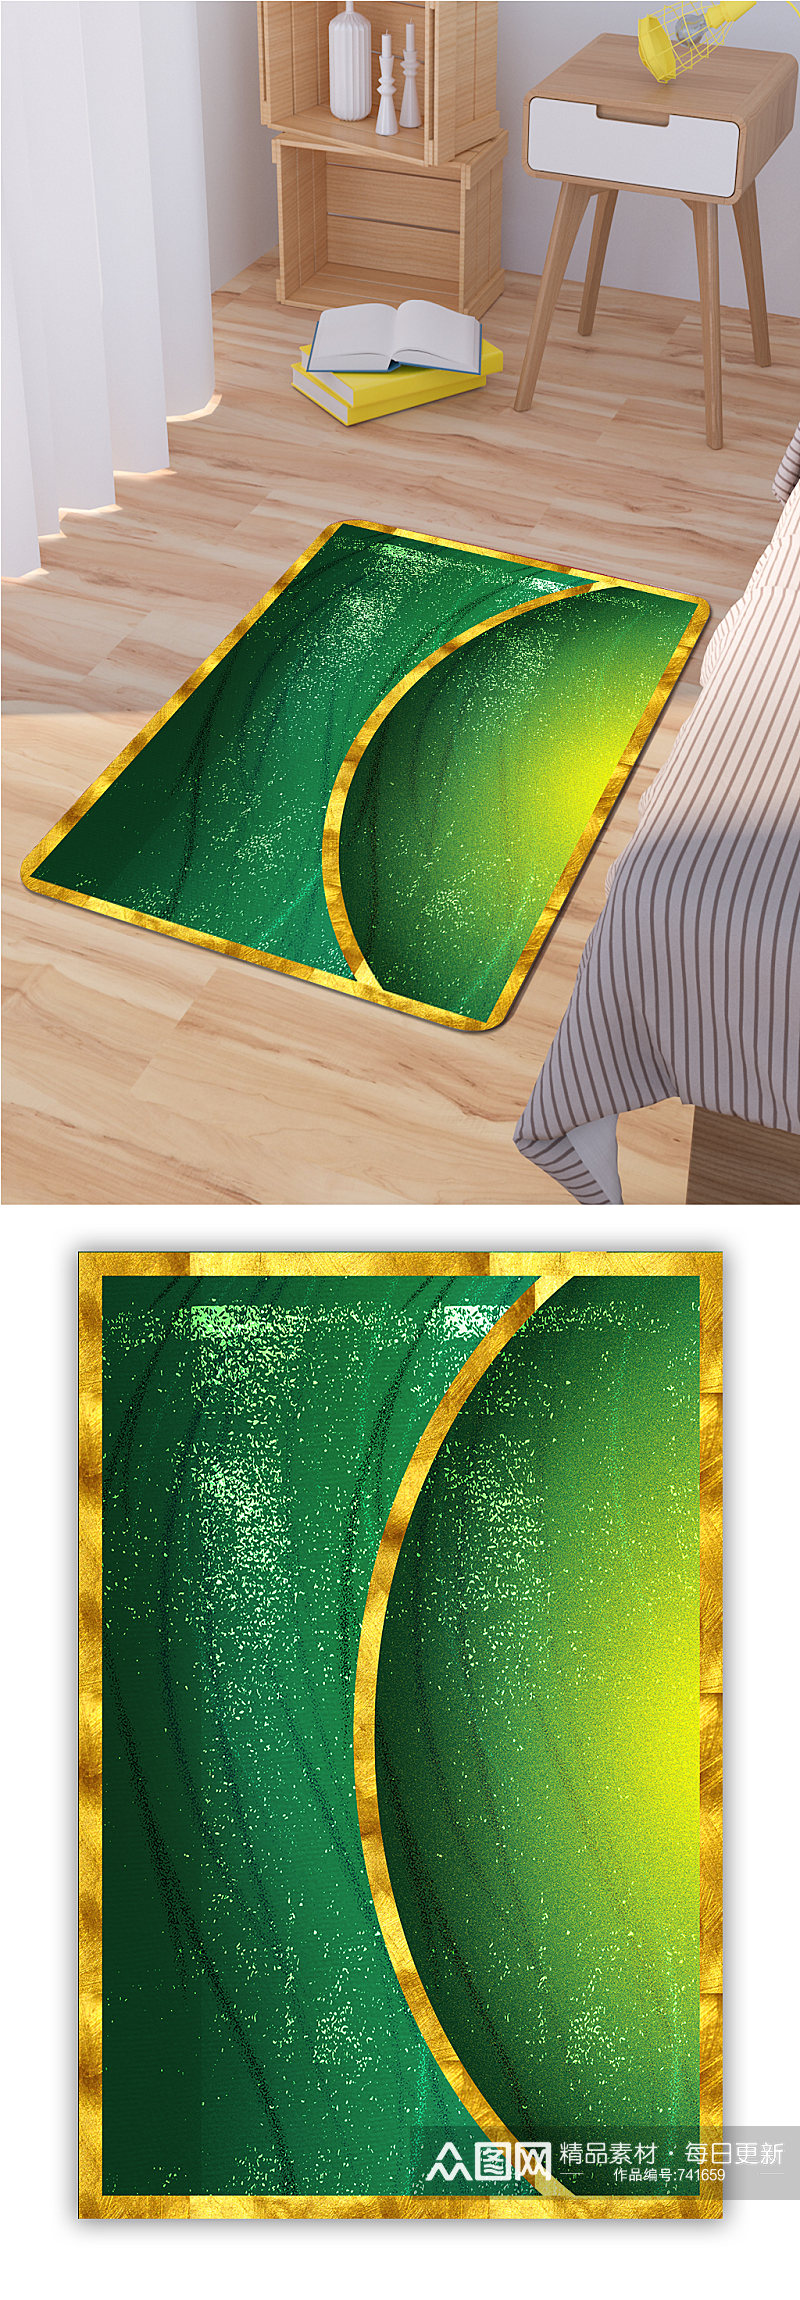 鎏金线条山水新中式地毯素材